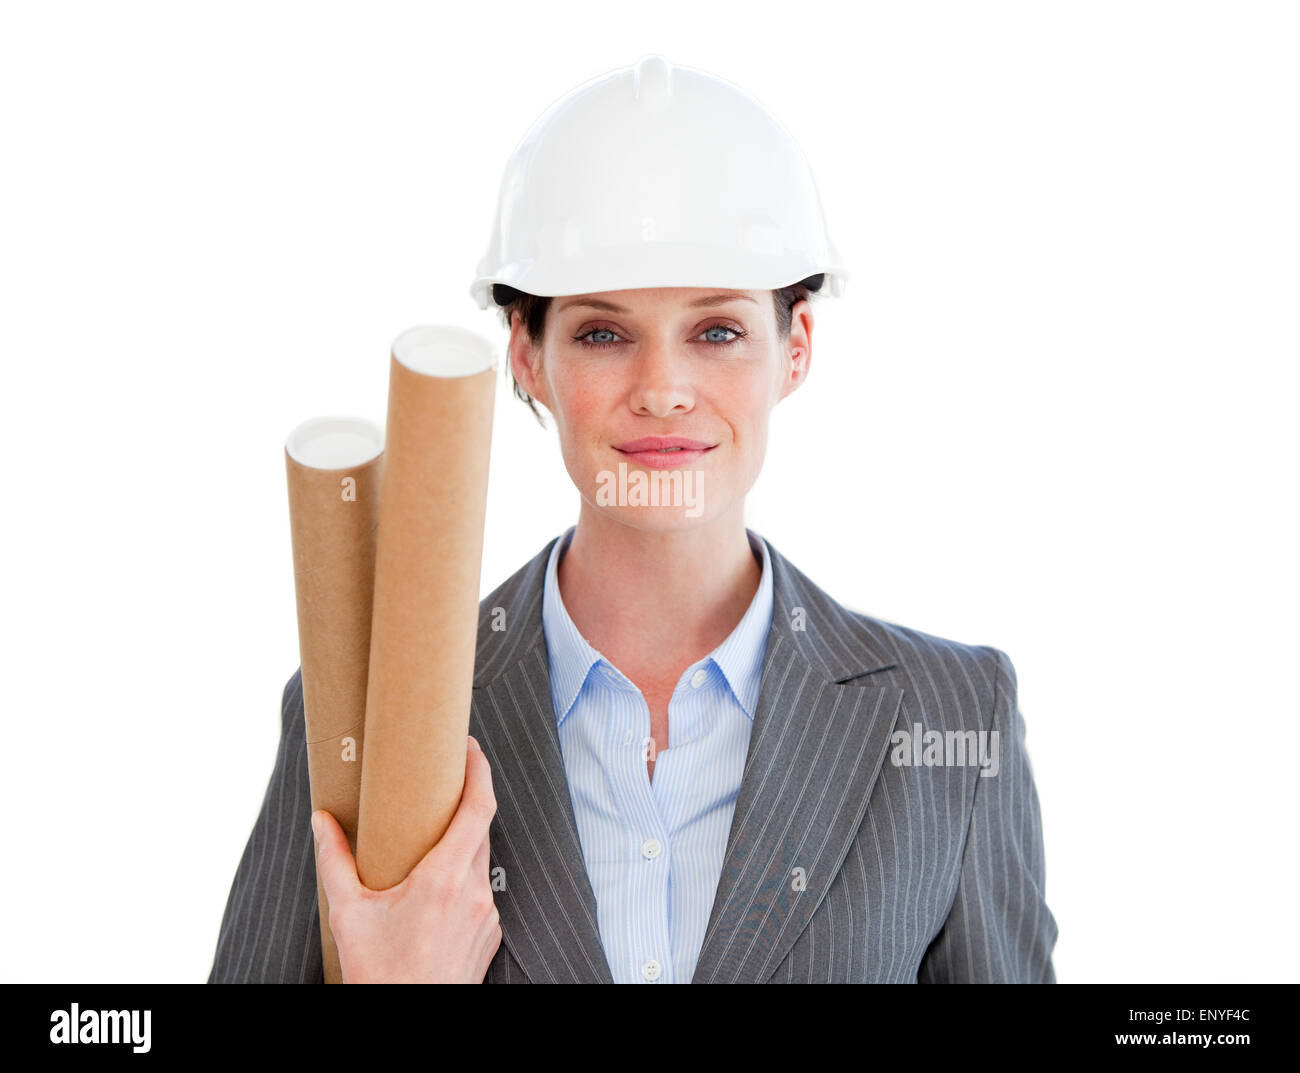 Porträt eines positiven weiblichen Architekten vor einem weißen Hintergrund Stockfoto